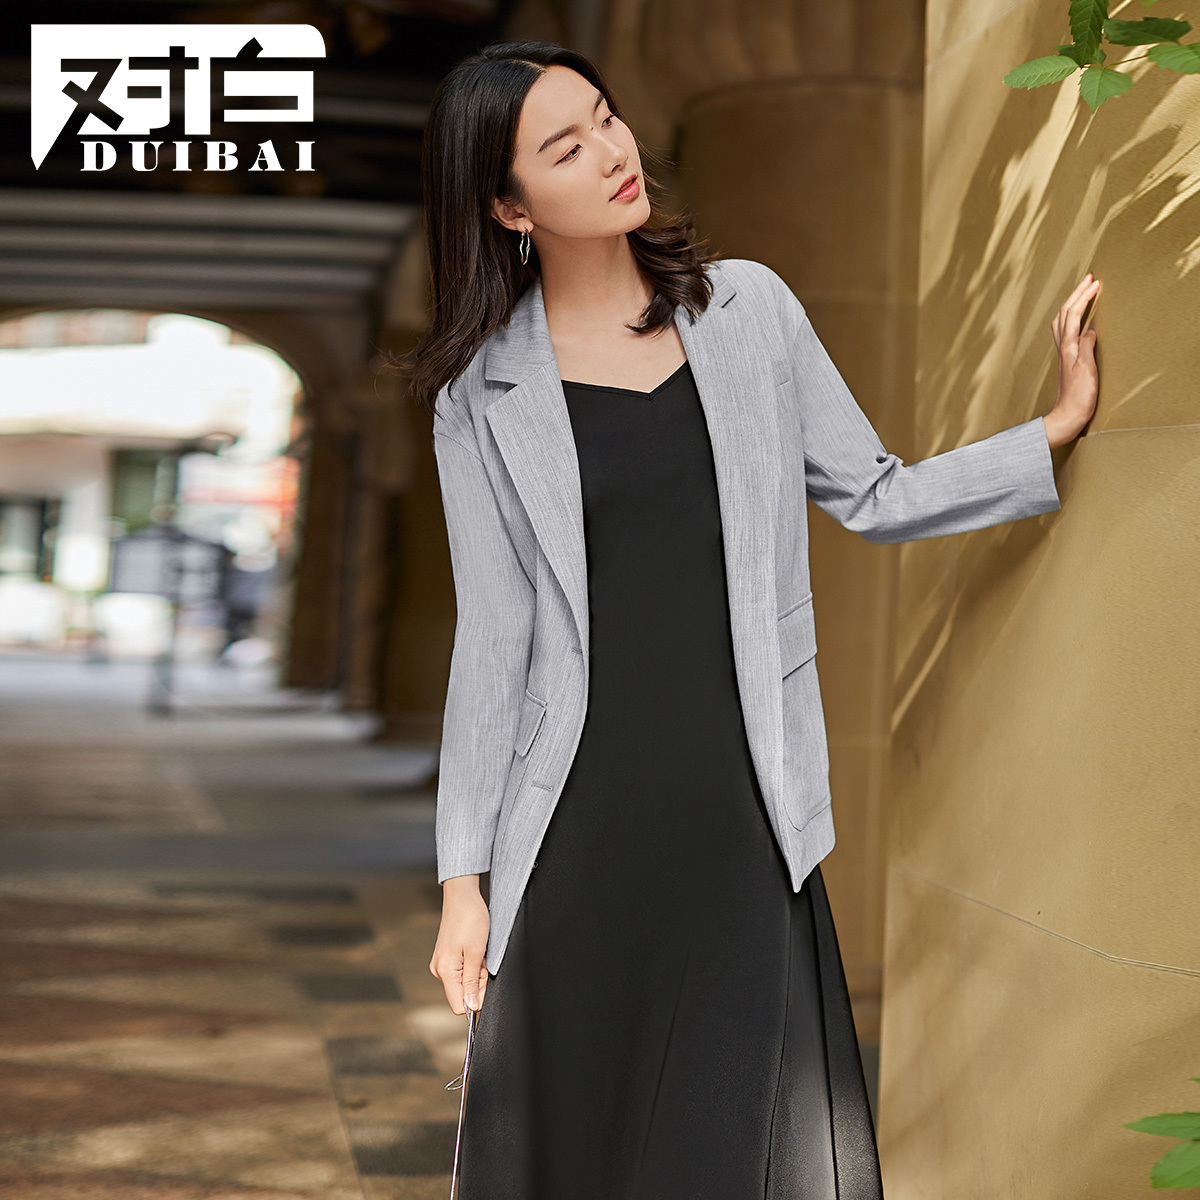 Trên phiên bản Hàn Quốc màu trắng đen phù hợp với áo khoác phụ nữ của thường bảo hộ lao động áo khoác 2020 mùa xuân mới ròng eo nhỏ màu đỏ phù hợp với